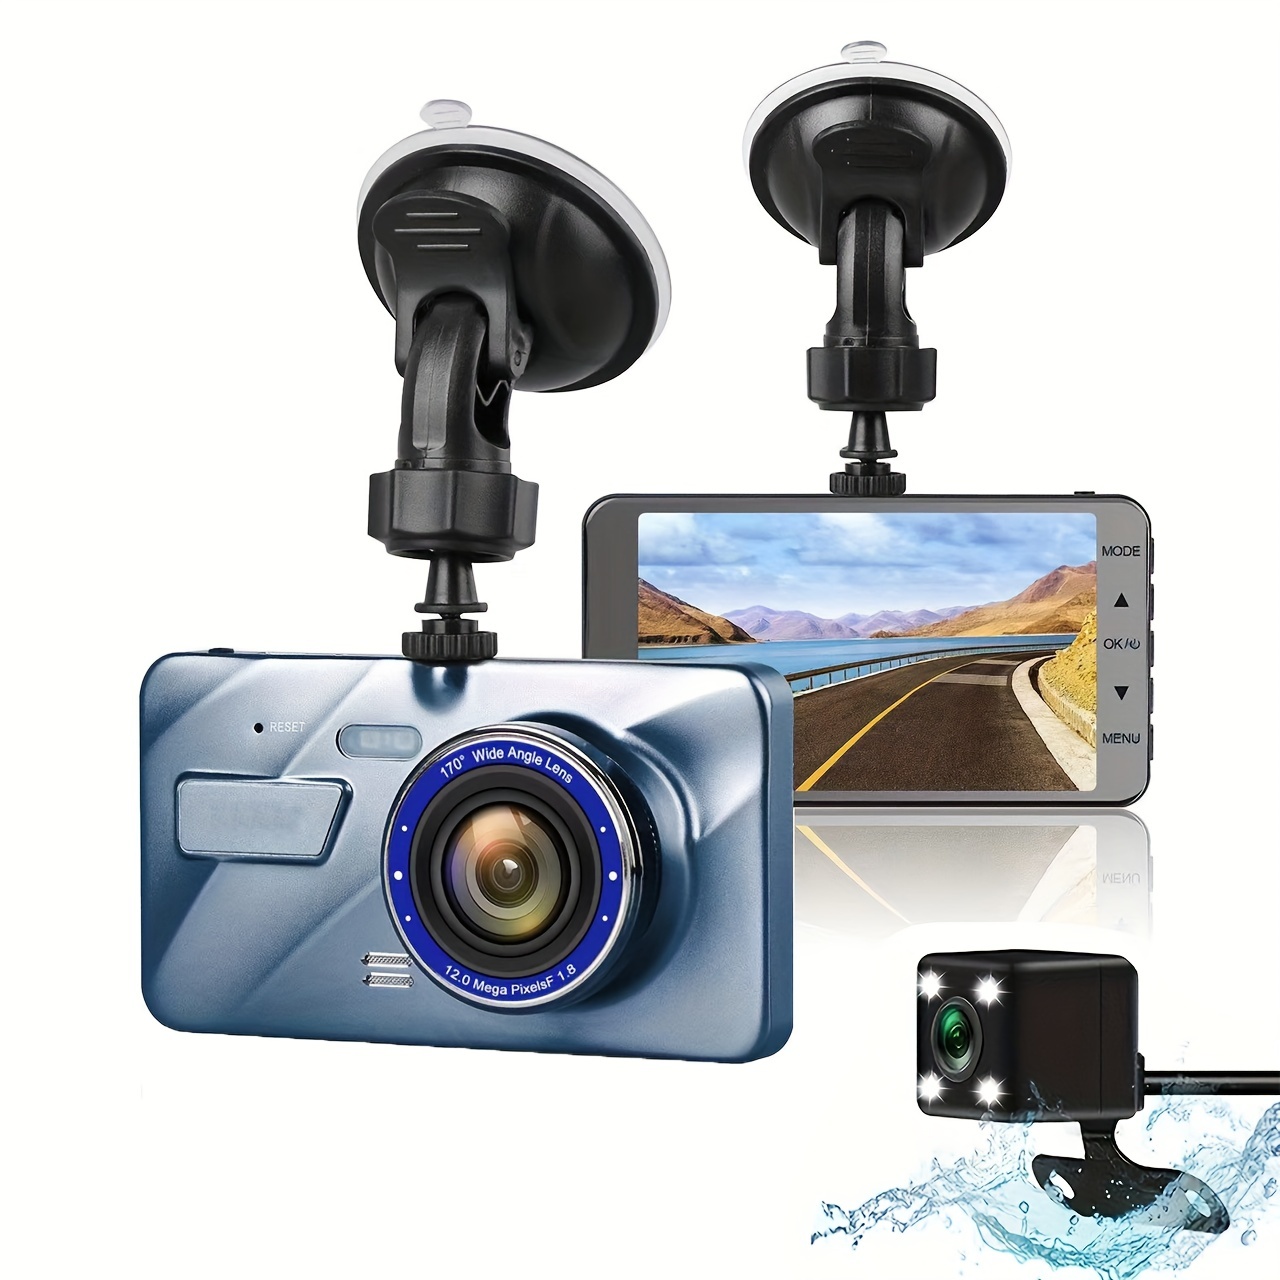 Caméra de voiture Dashcam avant et arrière, Full HD, grand angle